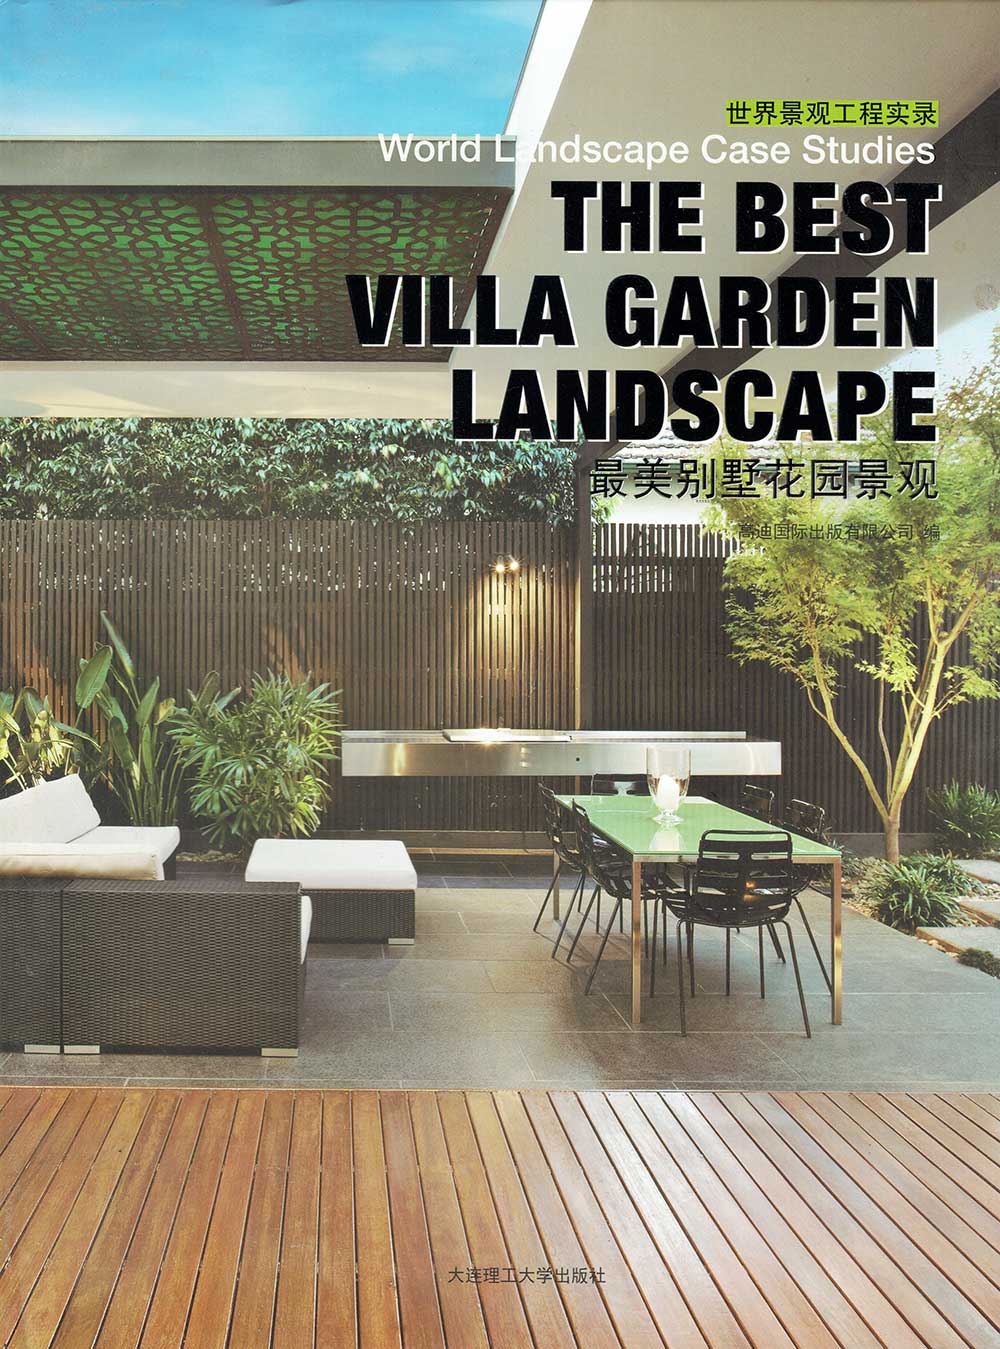 Best Villa Garden Landscape coverage of CM Garden Design